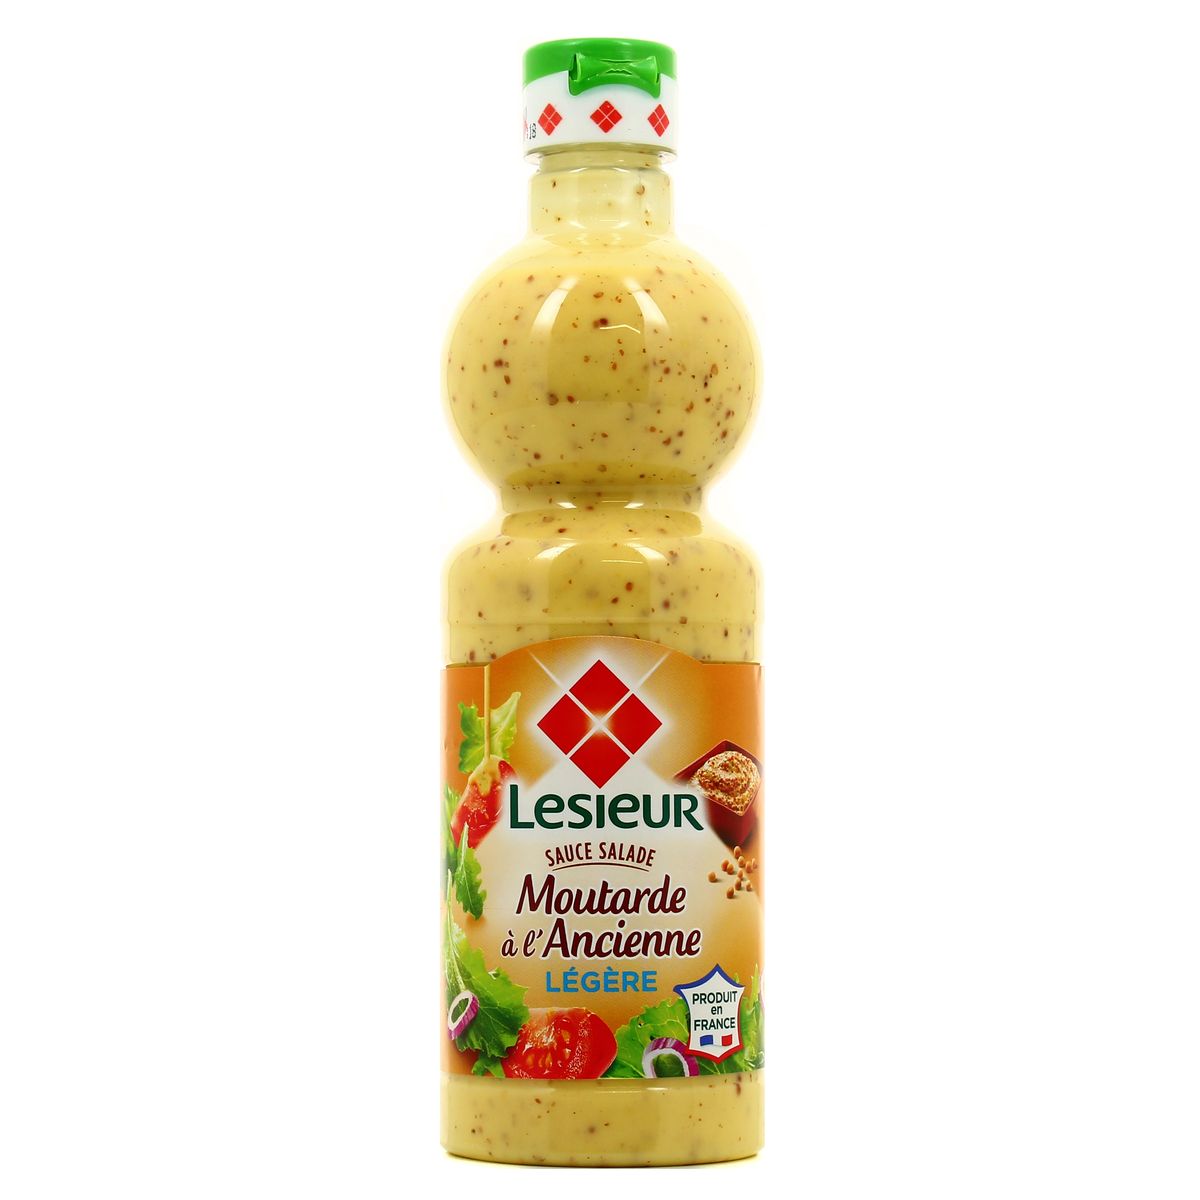 Achat / Vente Lesieur Sauce salade moutarde à l'ancienne légère, 500ml